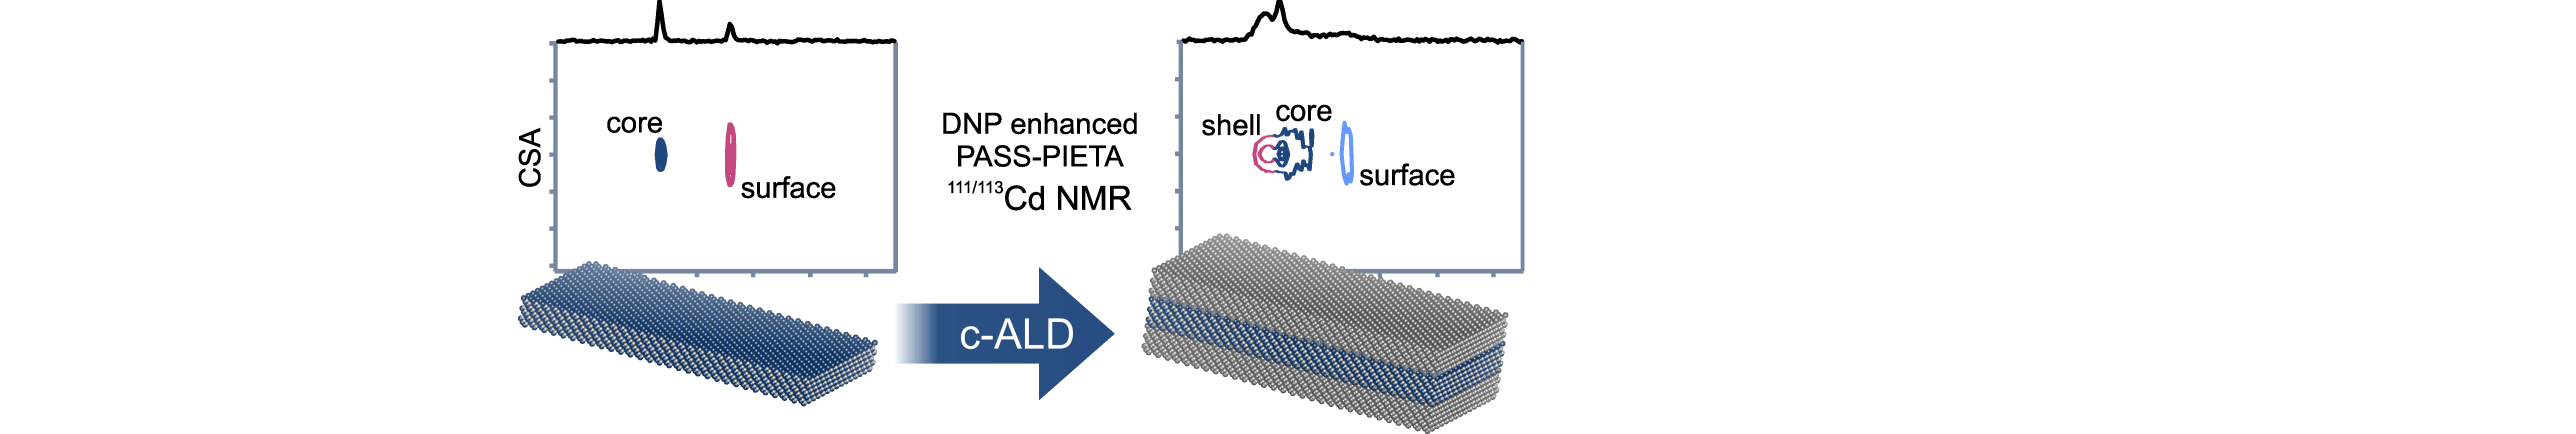 Colloidal-ALD-grown core/shell CdSe/CdS nanoplatelets as seen by DNP enhanced PASS-PIETA NMR spectroscopy